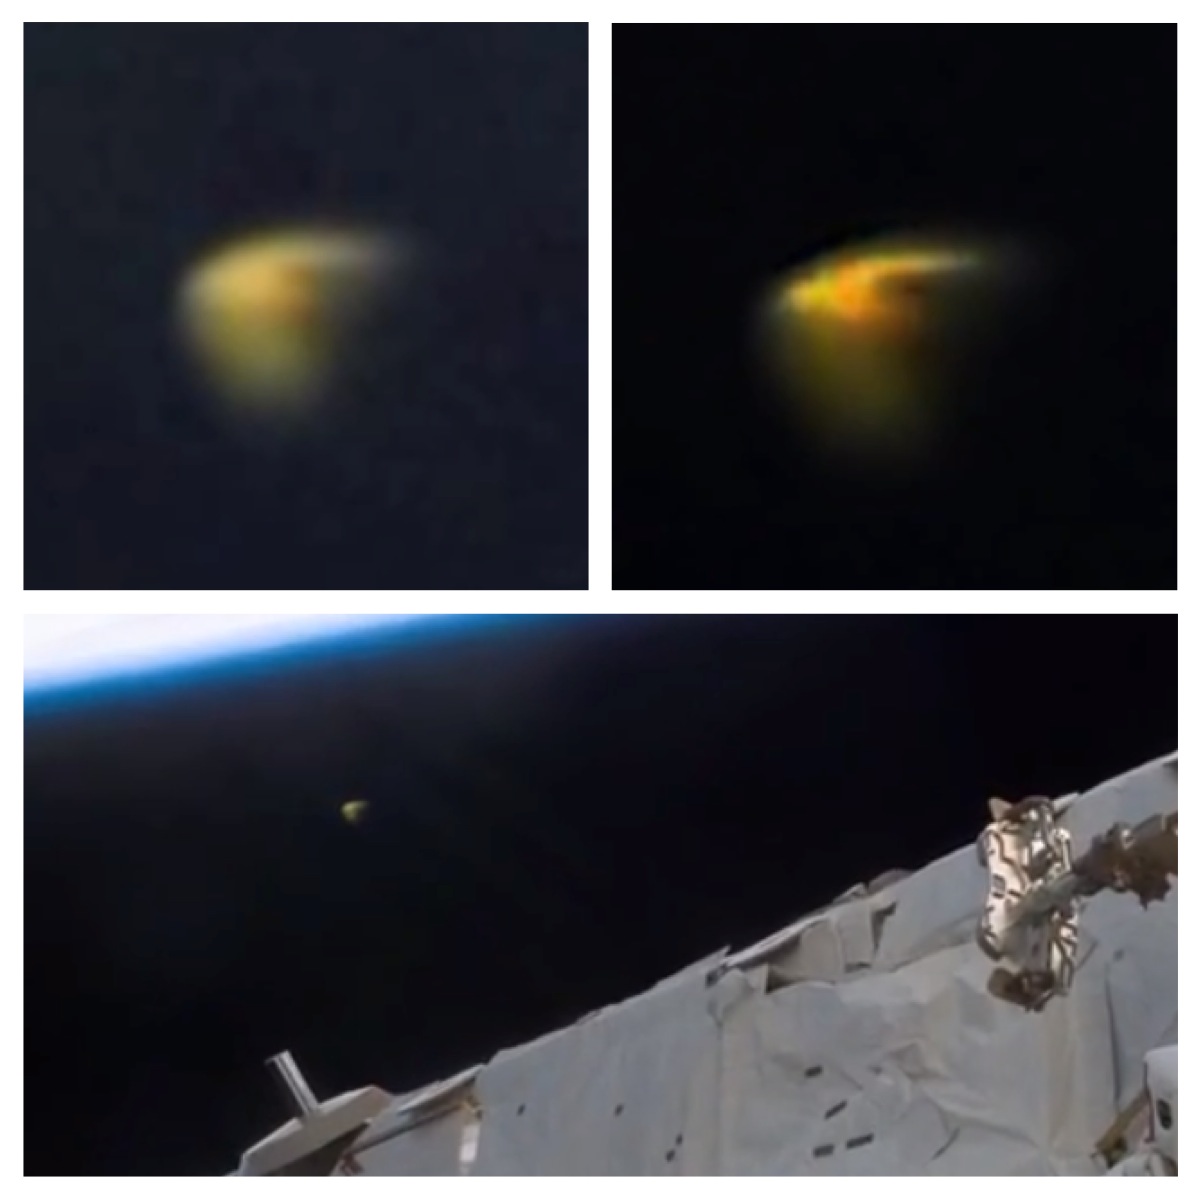 nasa space shuttle ufo